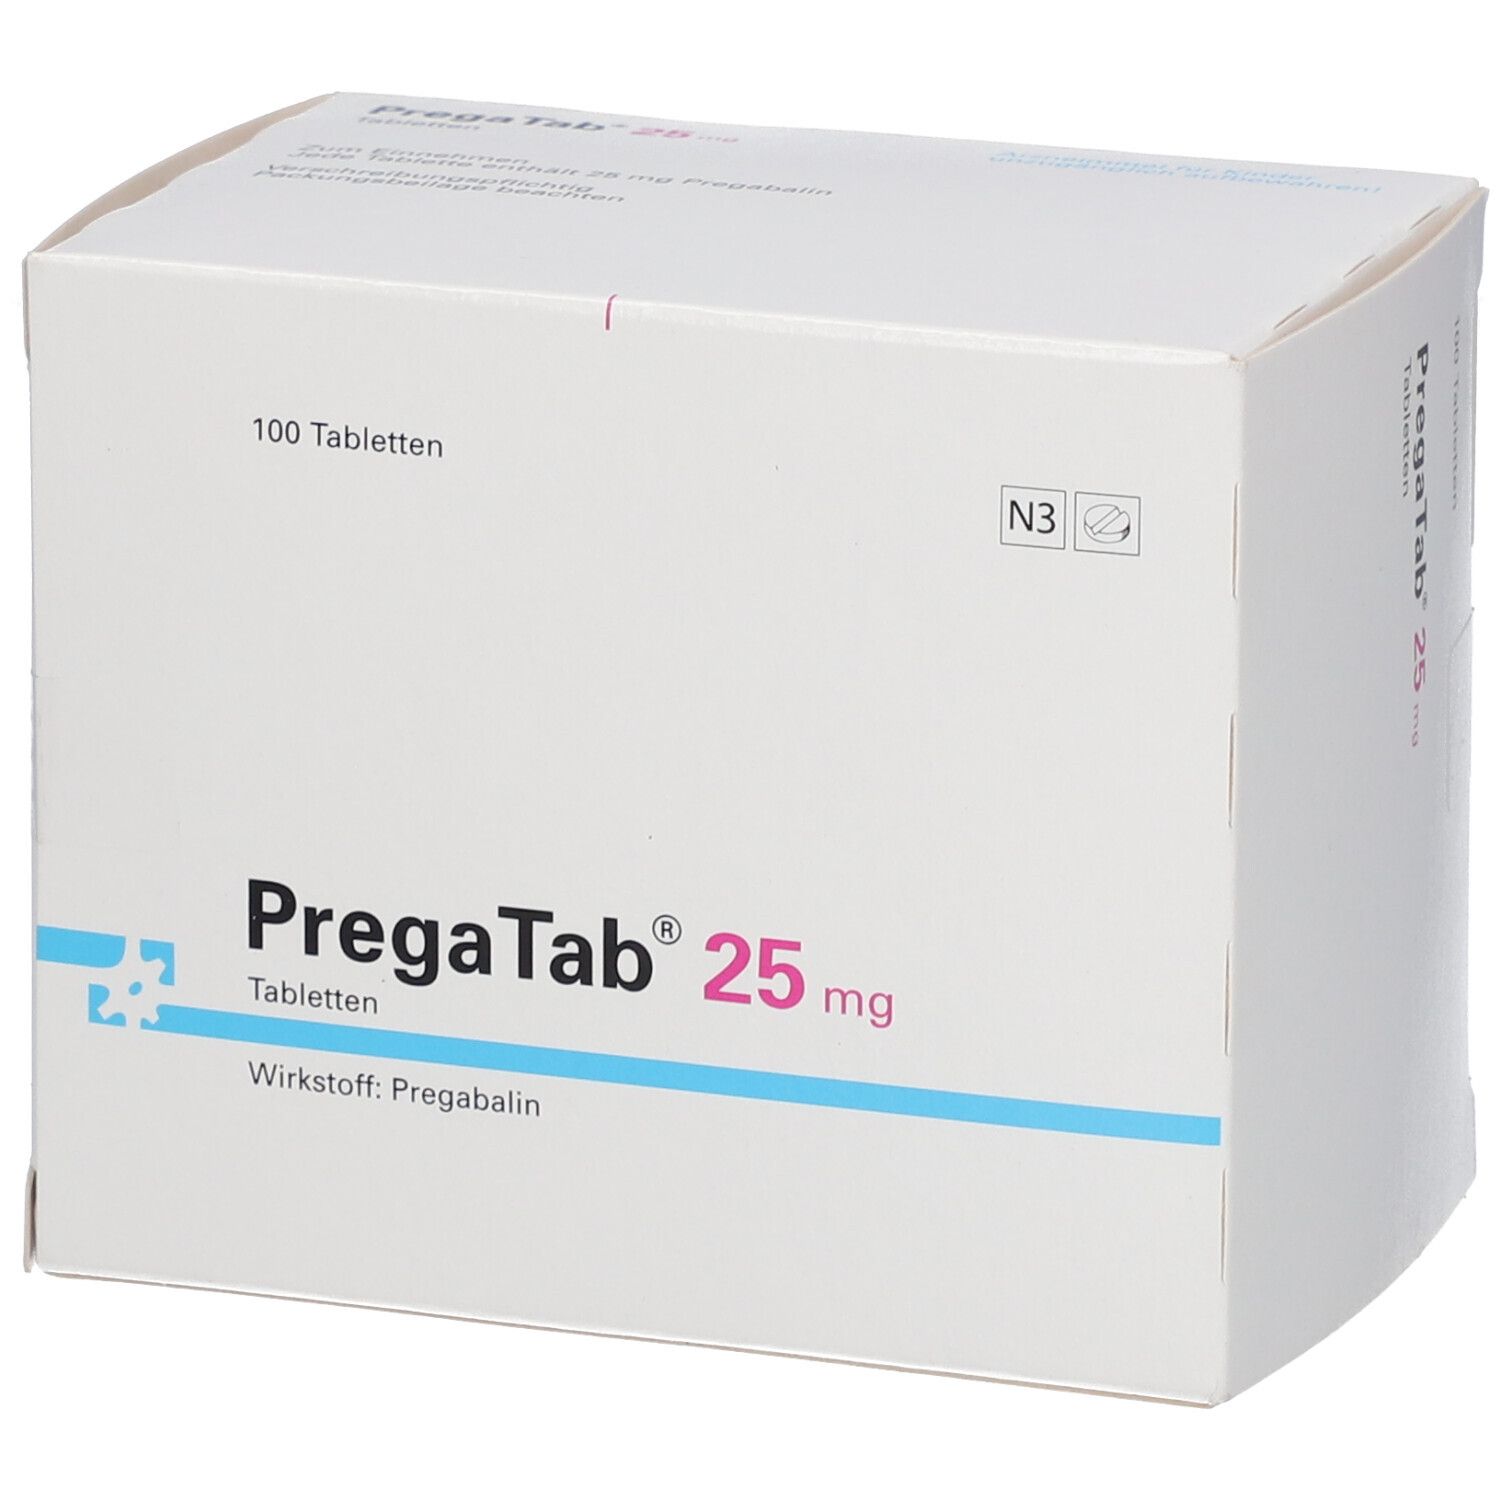 PregaTab® 25 mg